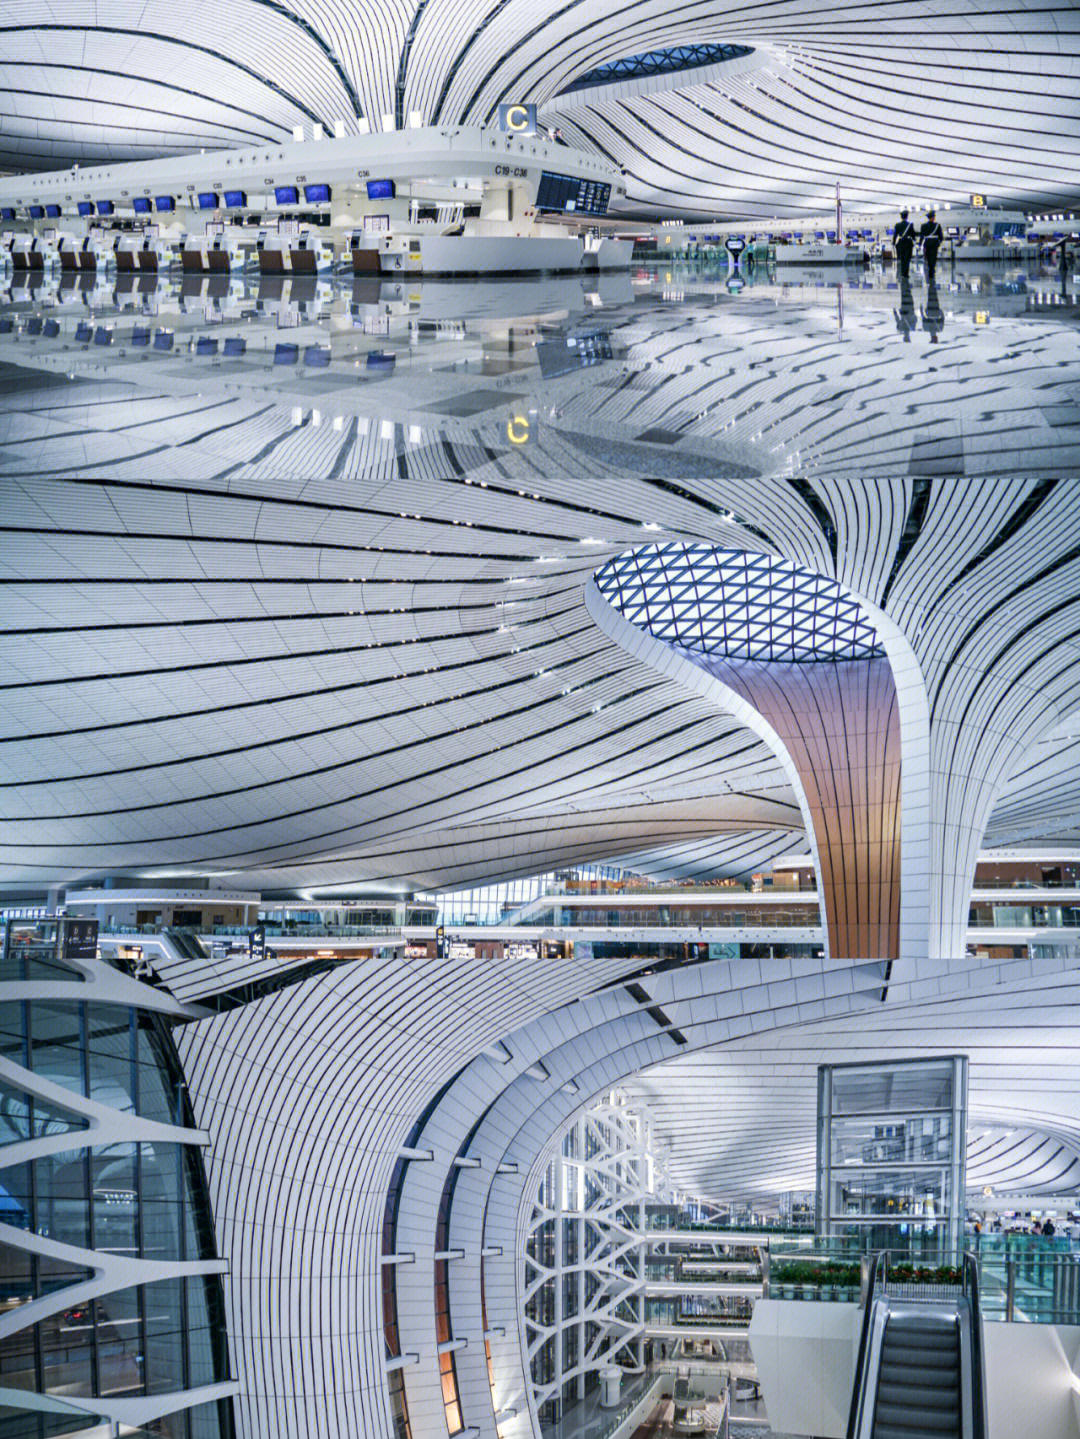 北京大兴国际机场是北京的地标建筑之一,也是目前世界上最大的单体航